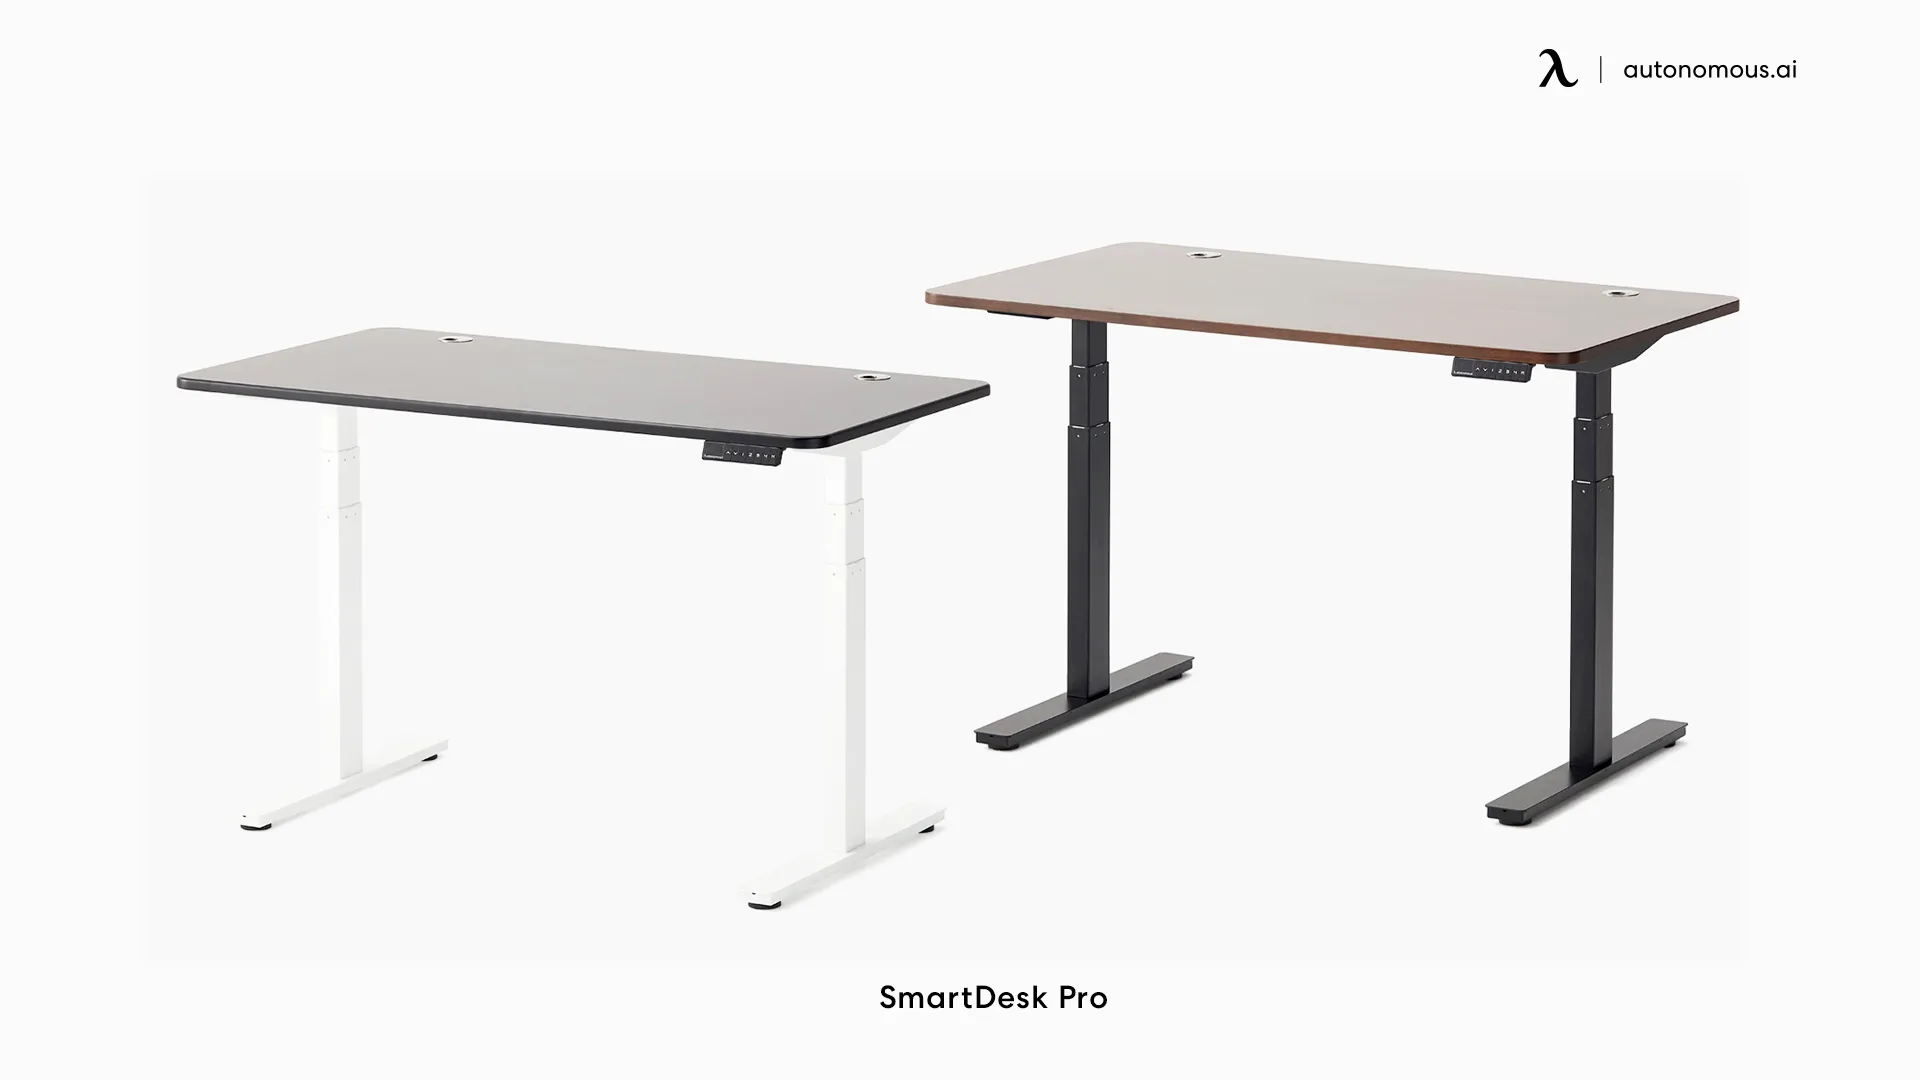 SmartDesk Pro futuristic office desk